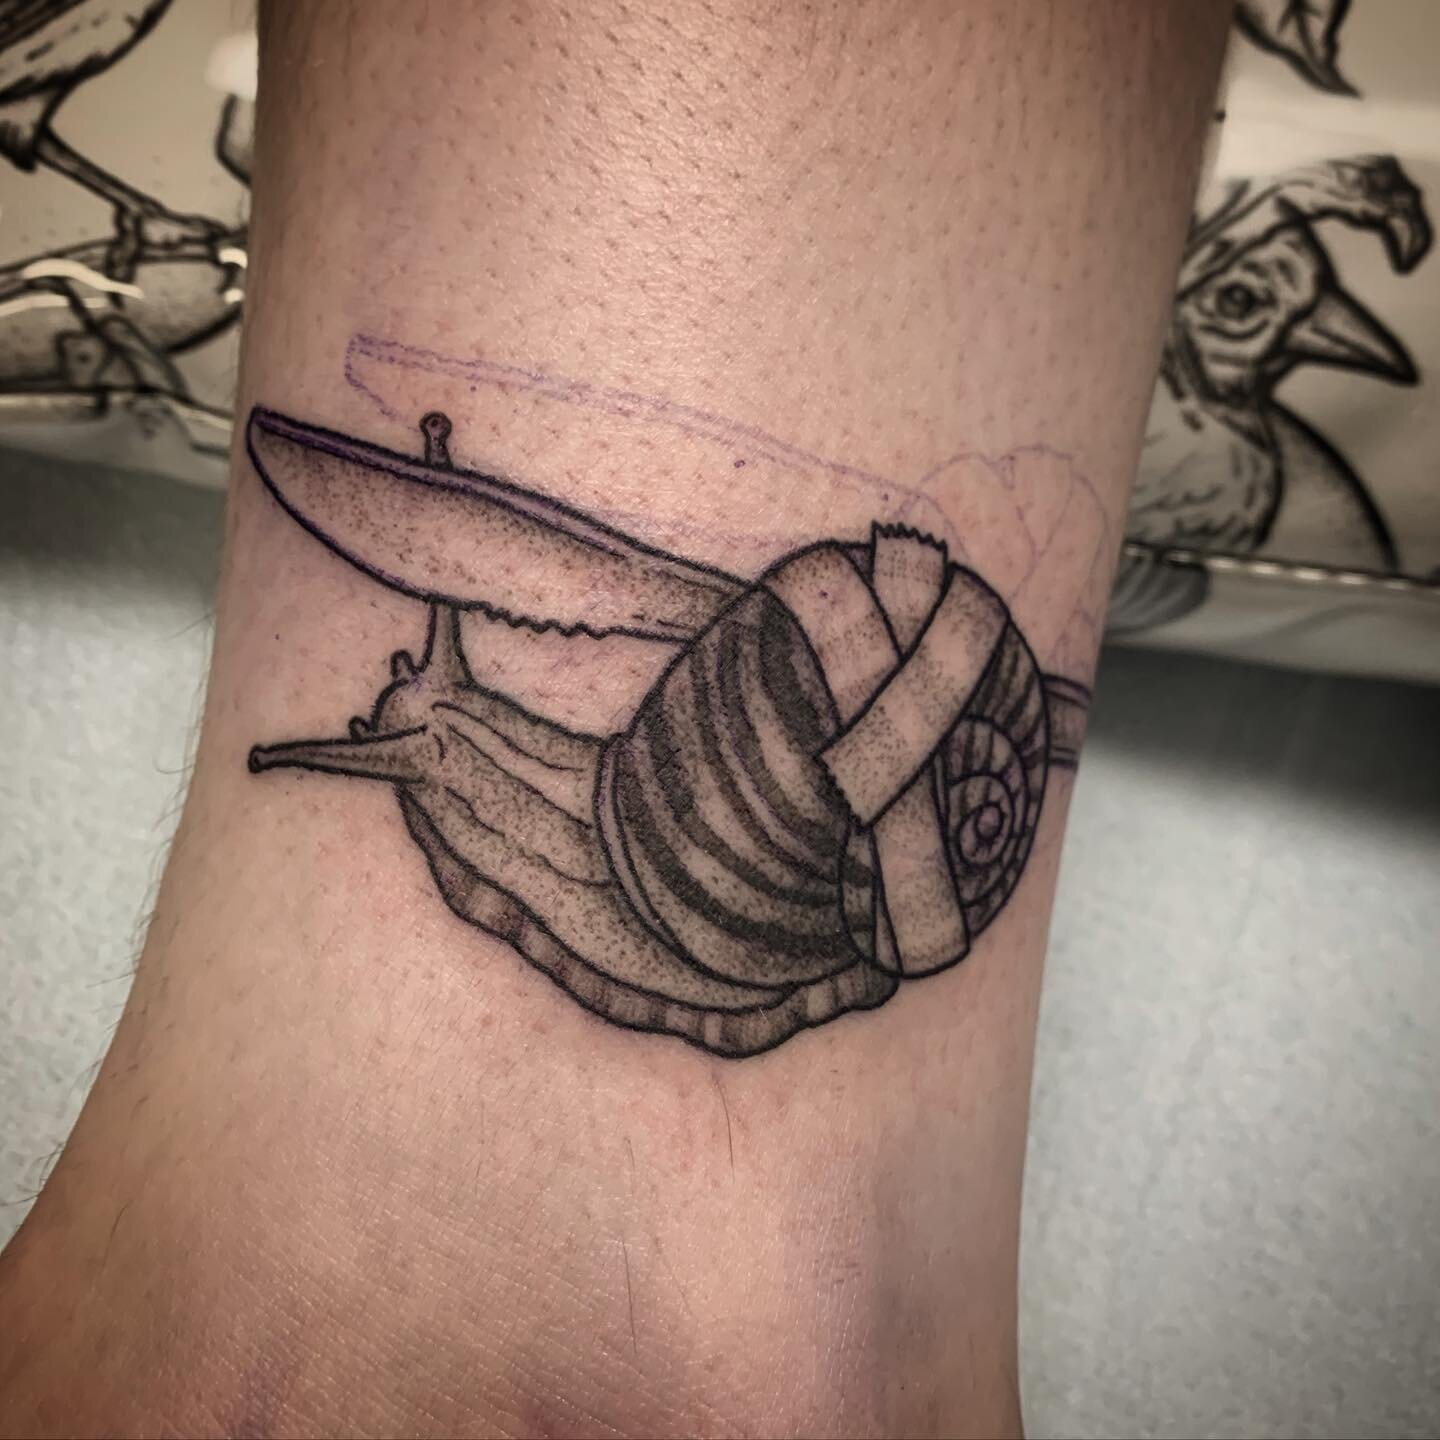 Battle snail! ✨🍴✨ I love tattooing weird flash ideas!